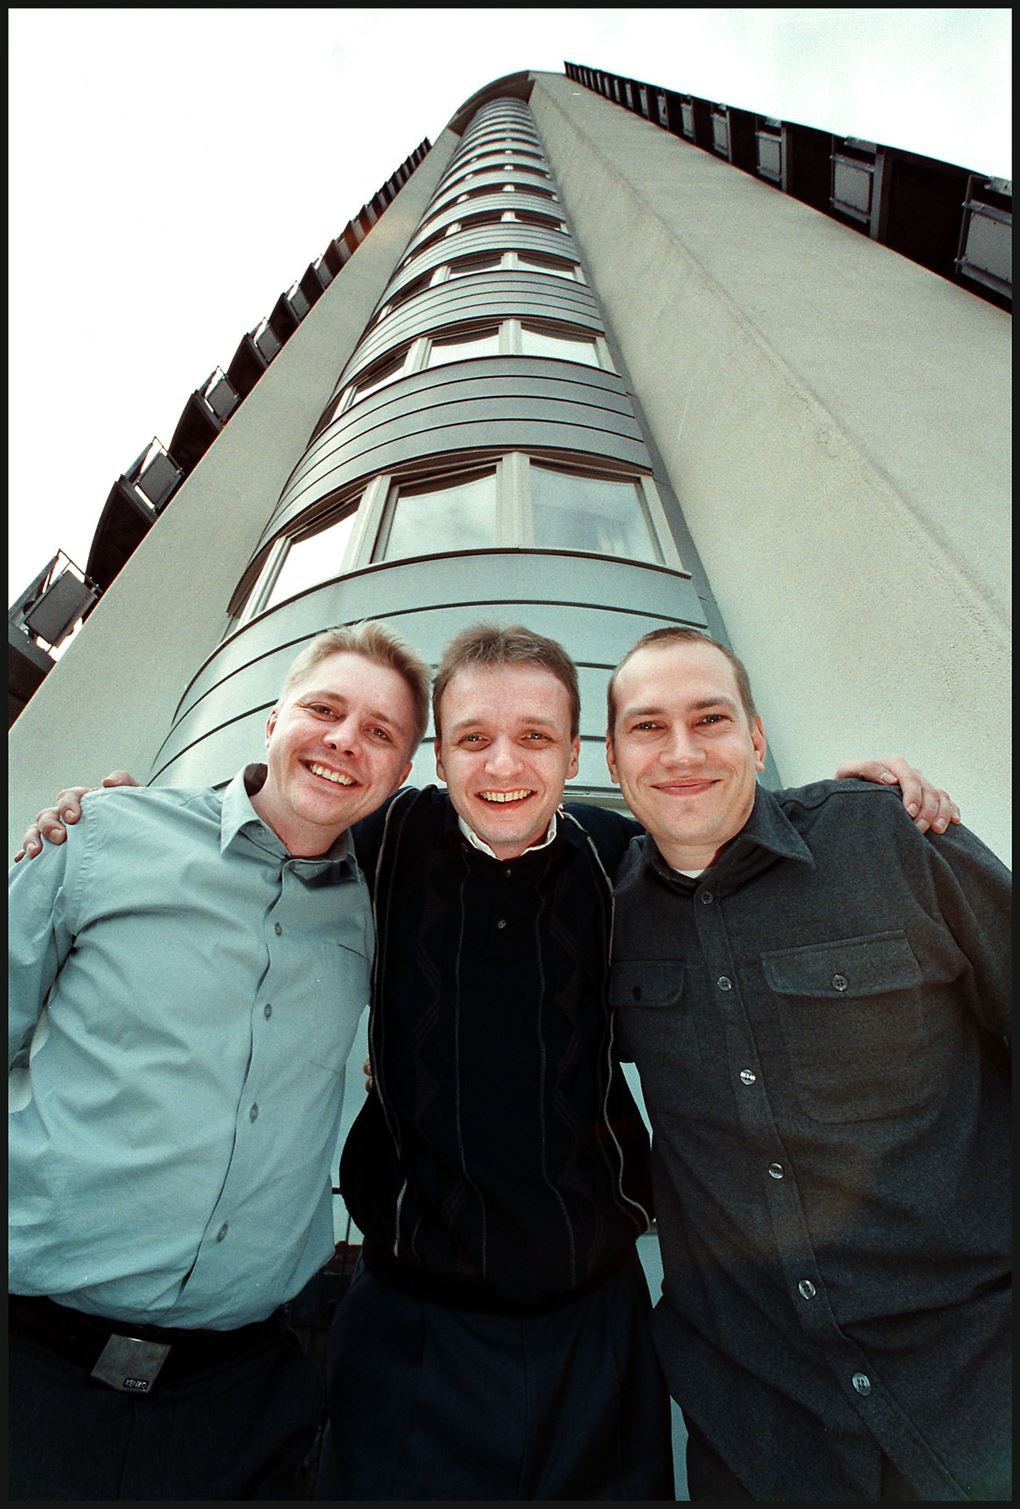 Tre unge gutter foran det store tårn i Valby, hvor Jubii havde hovedsæde.